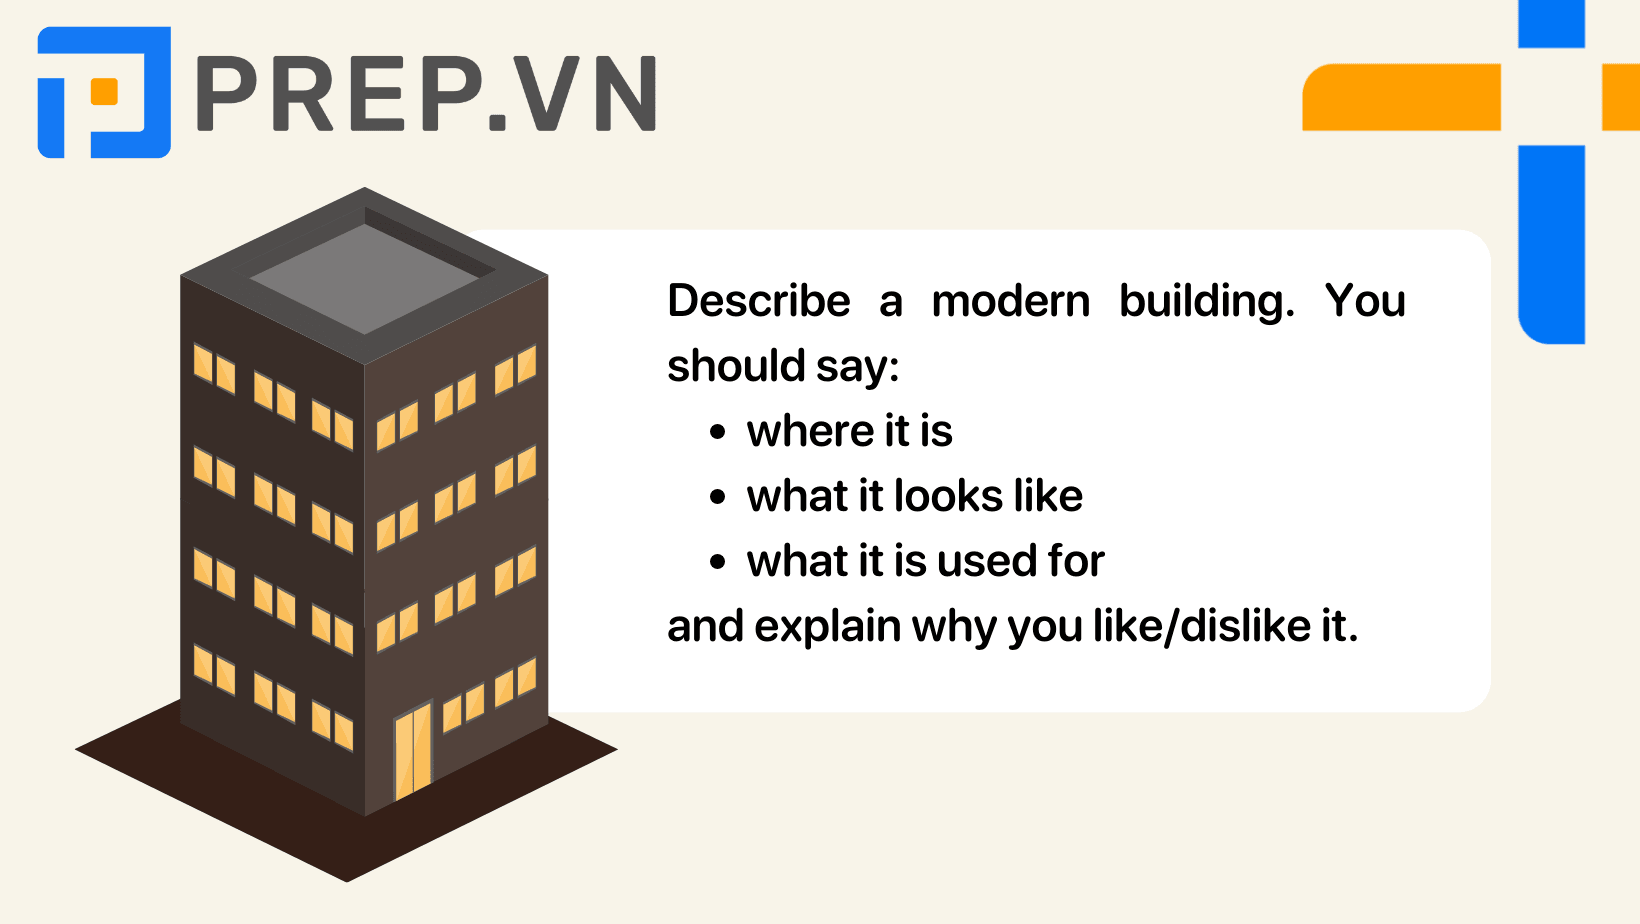 Describe a modern building